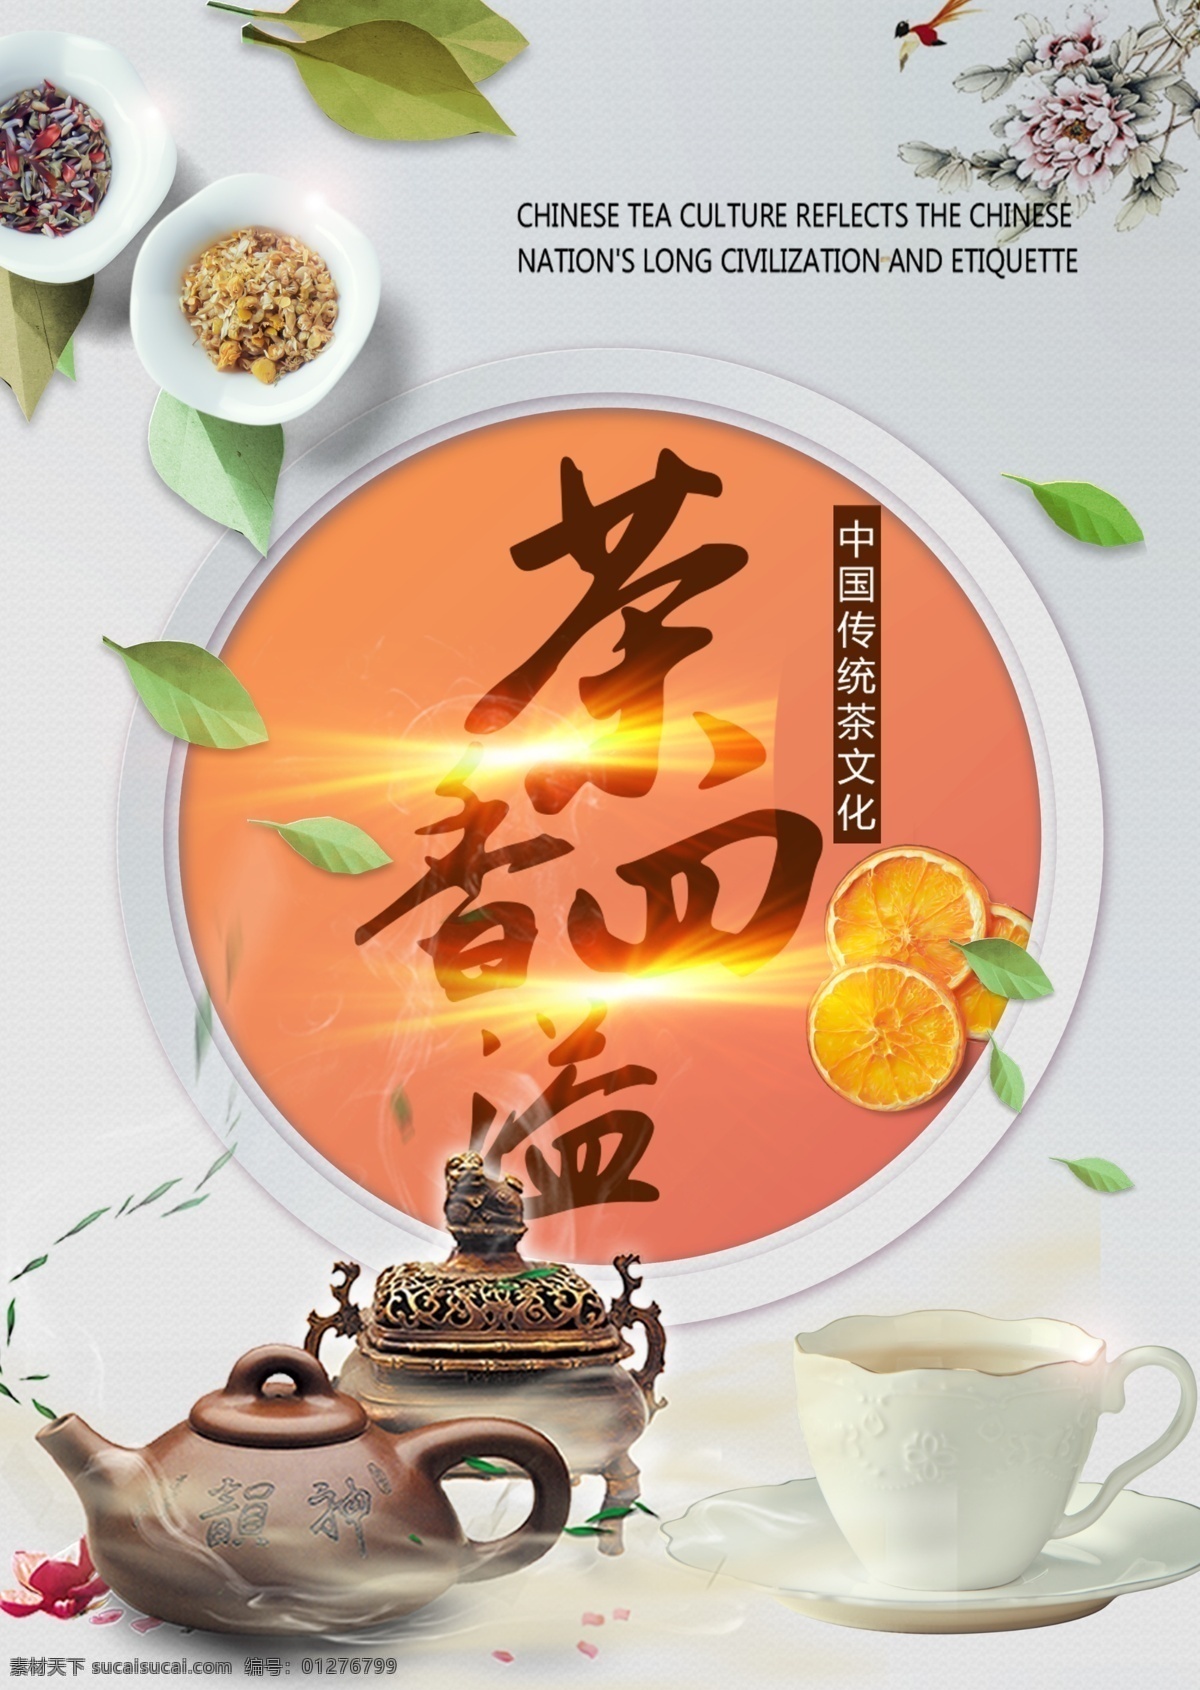 茶香四溢 海报 展板 喷绘 写真 单透 品茶 下午茶 养生 休闲 茶道 树叶 花 橘子